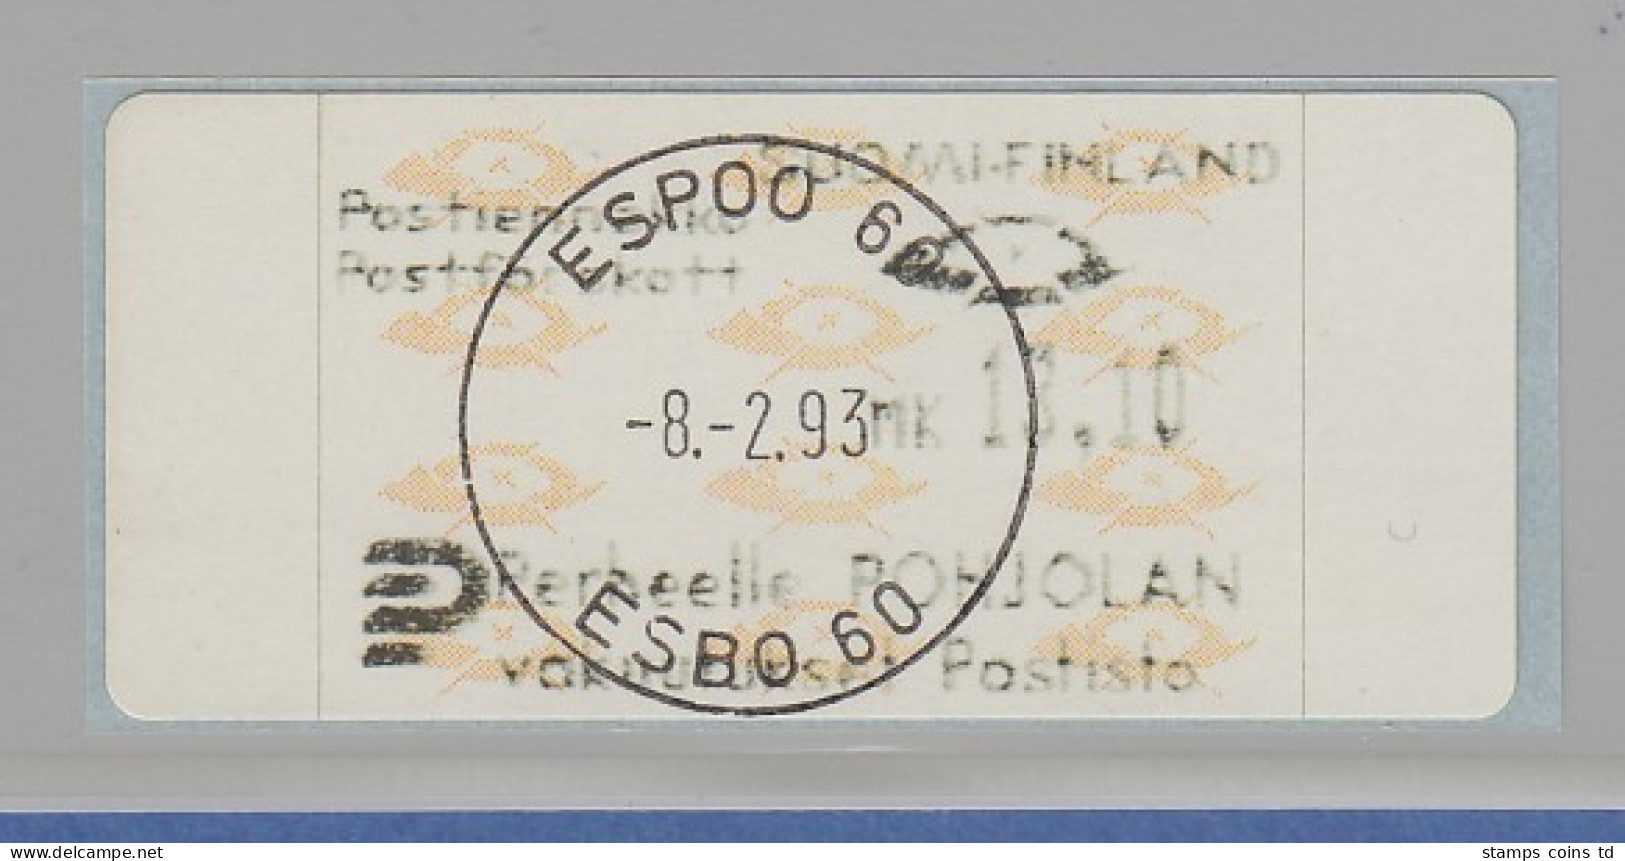 Finnland 1993 Dassault-ATM Mi.-Nr. 12.3 Z5 Gestempelt ESPOO 8.2.93. - Vignette [ATM]